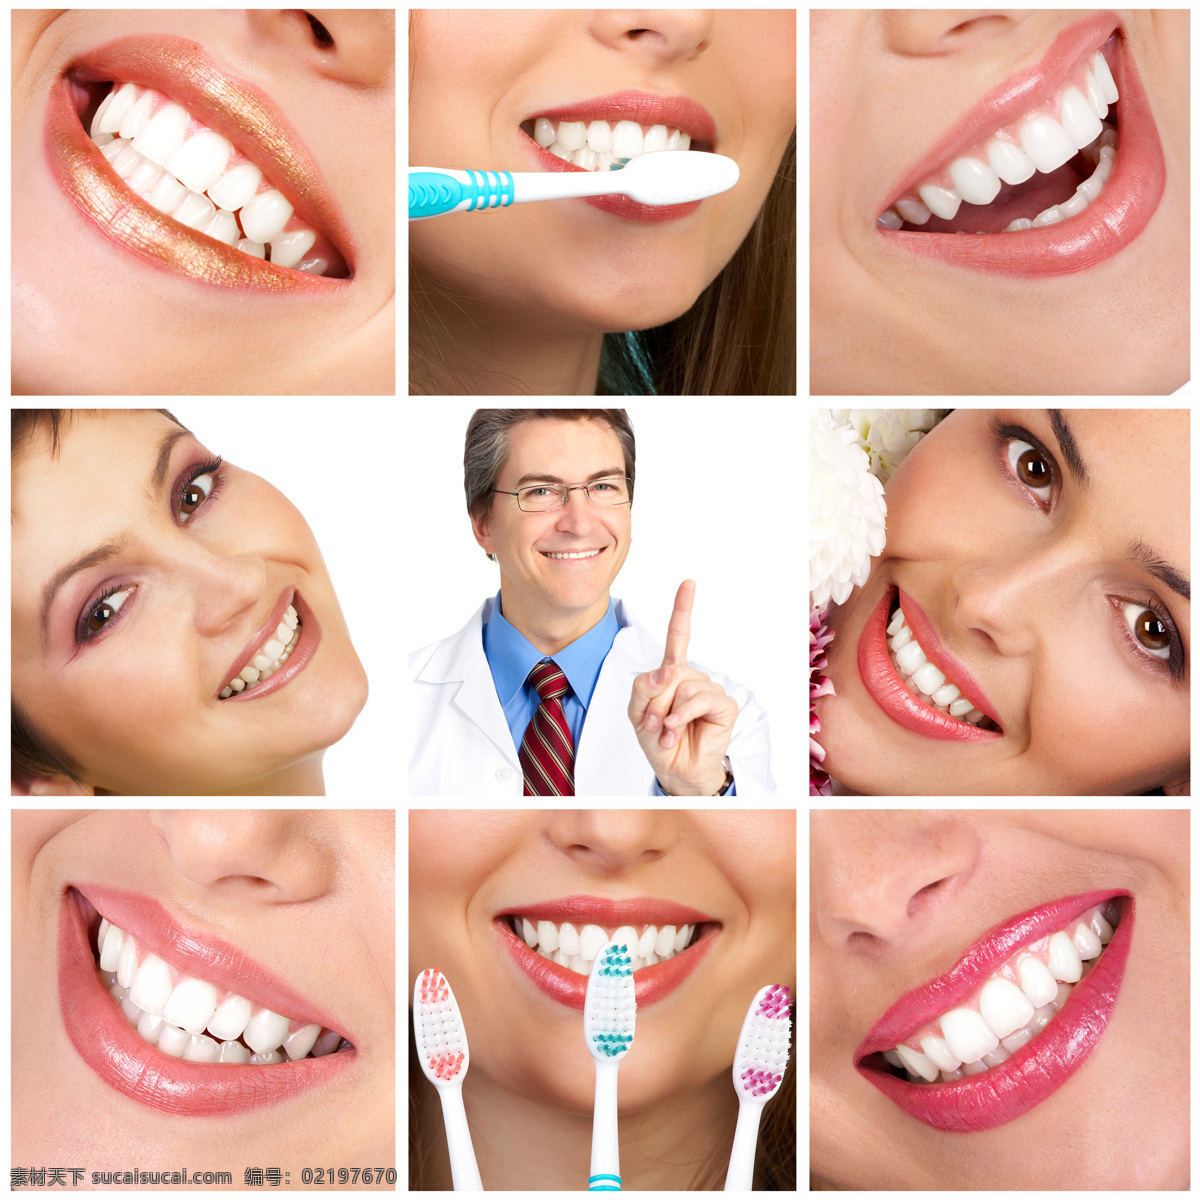 刷牙 美女图片 健康牙齿 洁白牙齿 健康洁白 微笑 笑容 牙刷 医生 美女 人体器官图 人物图片